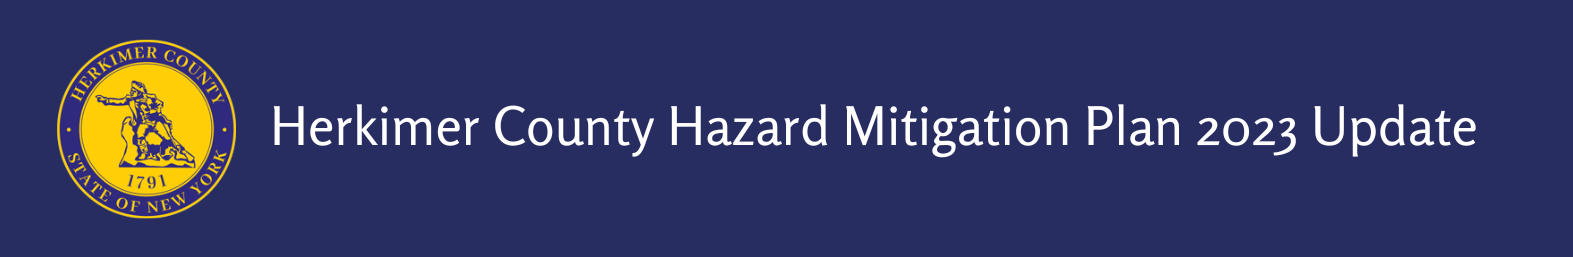 Herkimer County Hazard Mitigation Plan